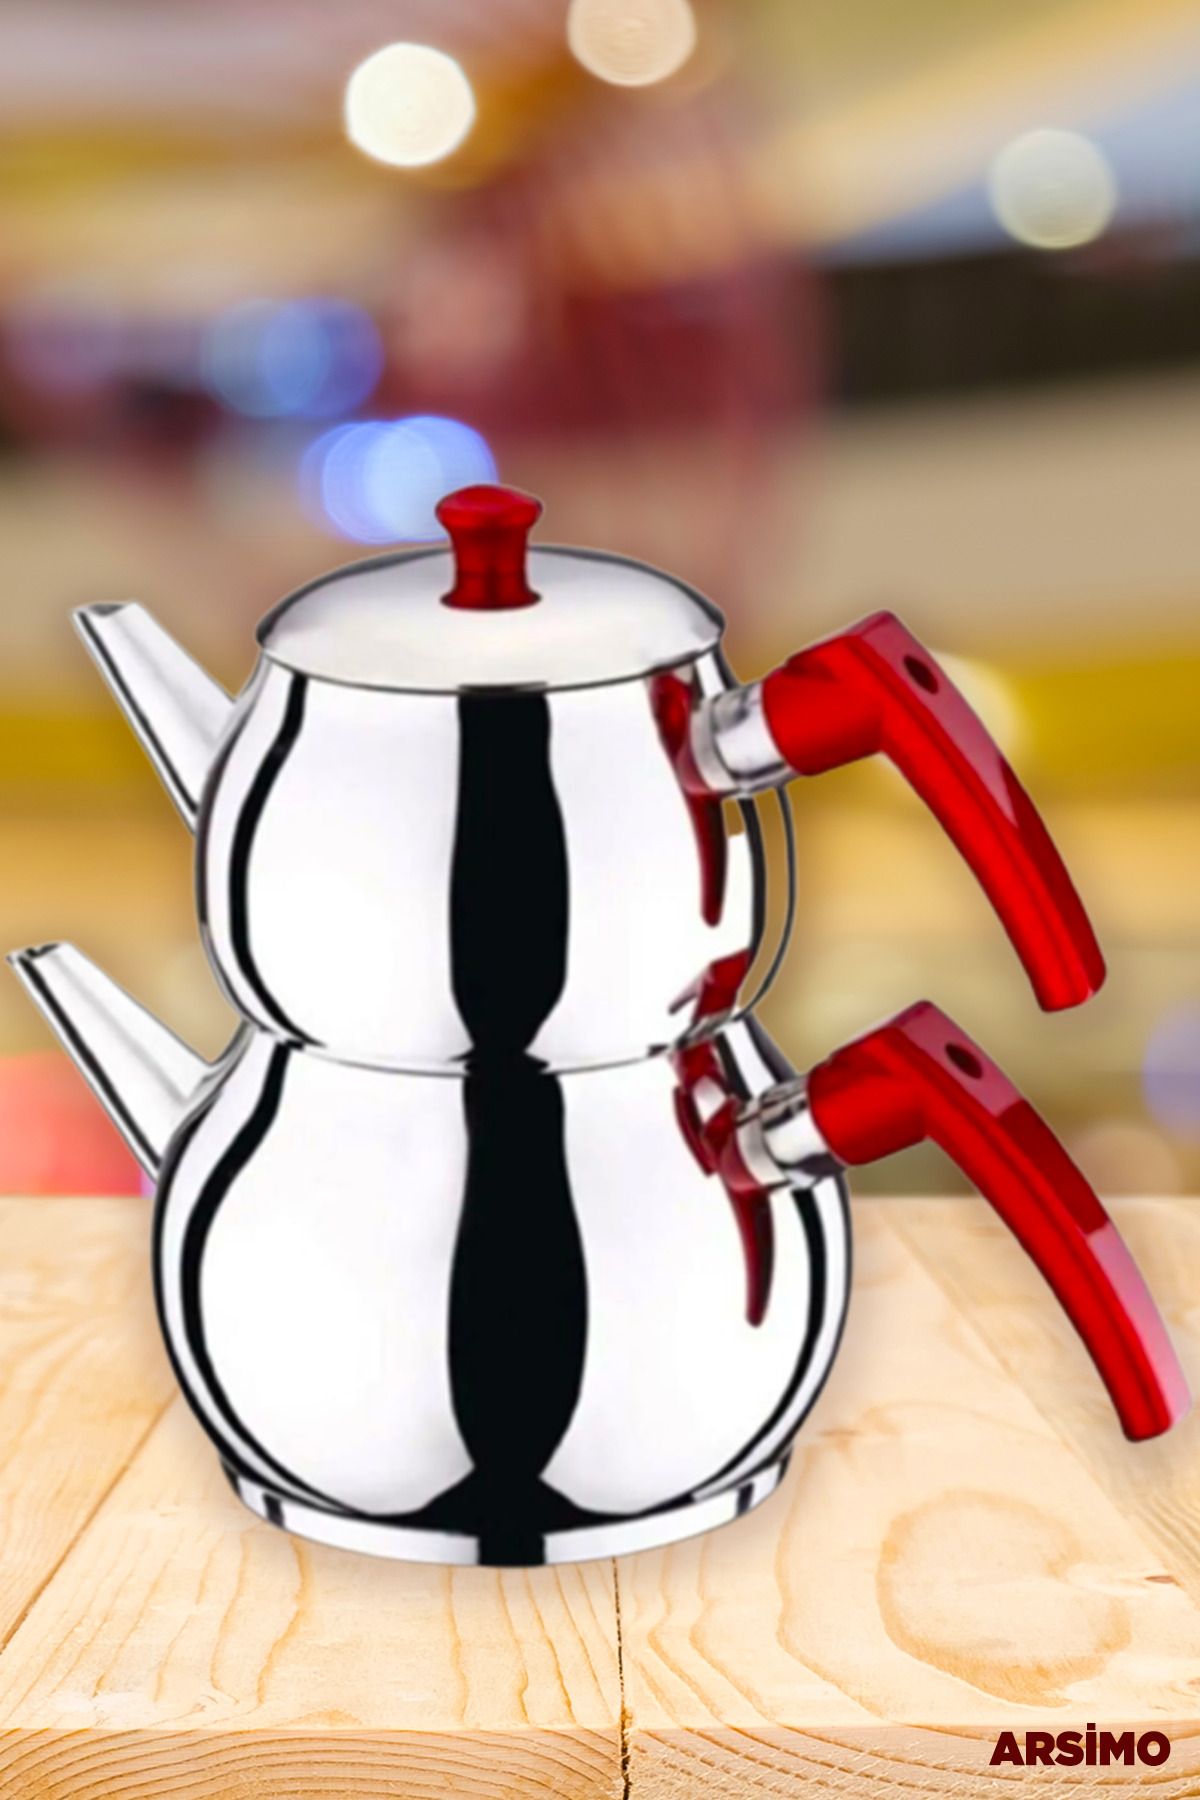 Arsimo Çelik Mini Boy Kırmızı Kulplu Çaydanlık Takımı